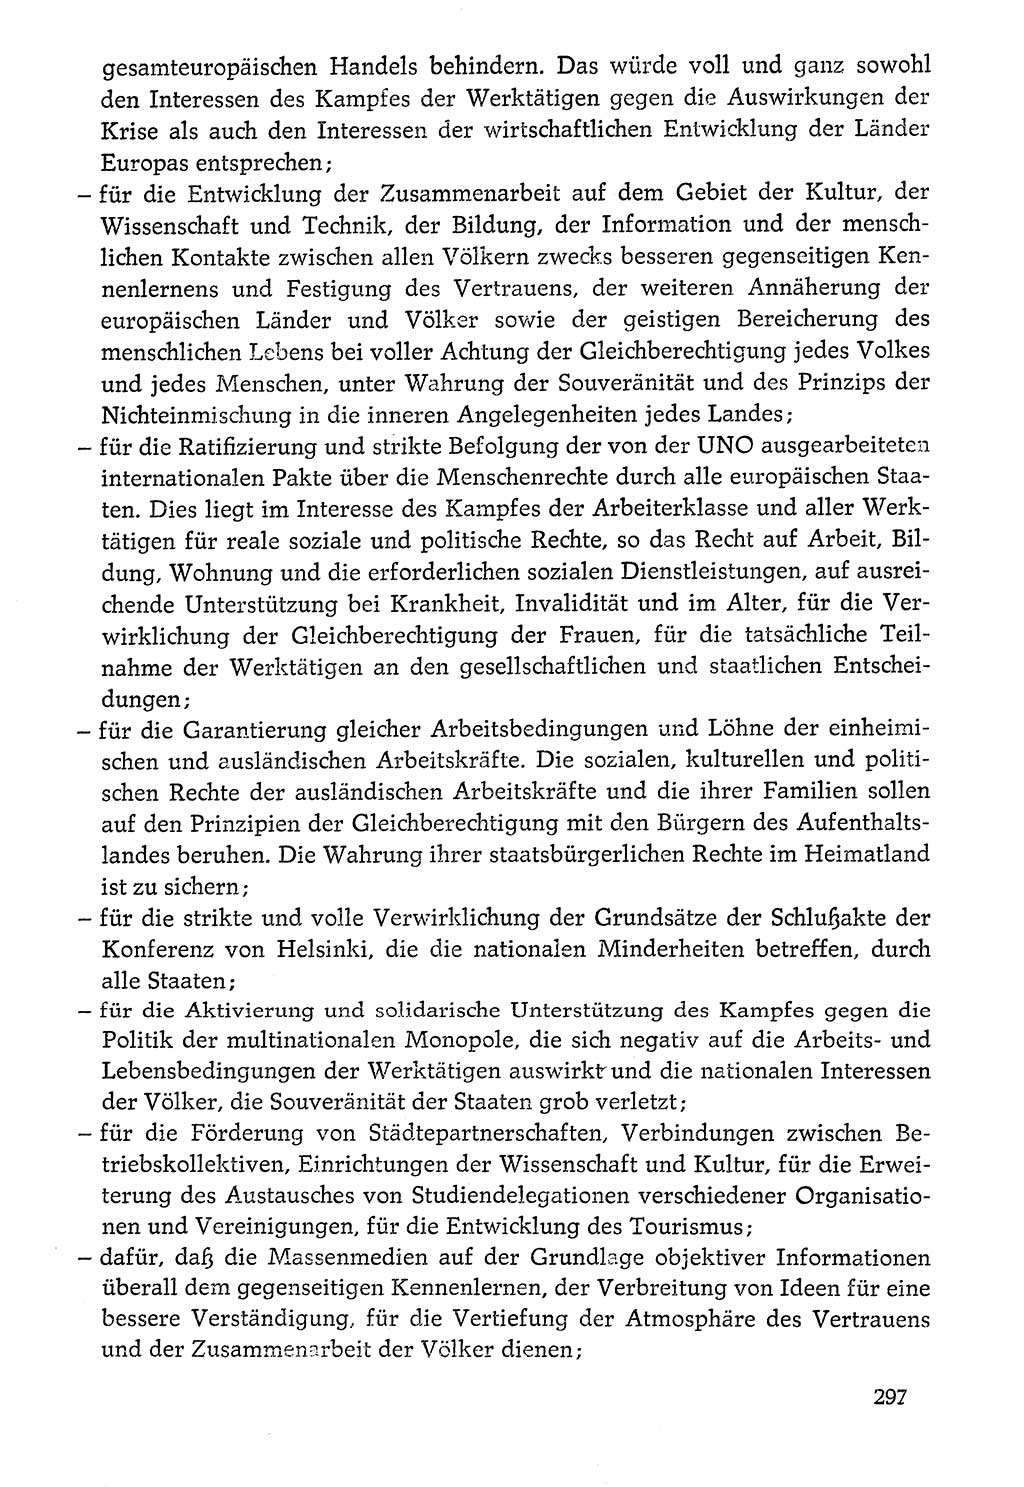 Dokumente der Sozialistischen Einheitspartei Deutschlands (SED) [Deutsche Demokratische Republik (DDR)] 1976-1977, Seite 297 (Dok. SED DDR 1976-1977, S. 297)